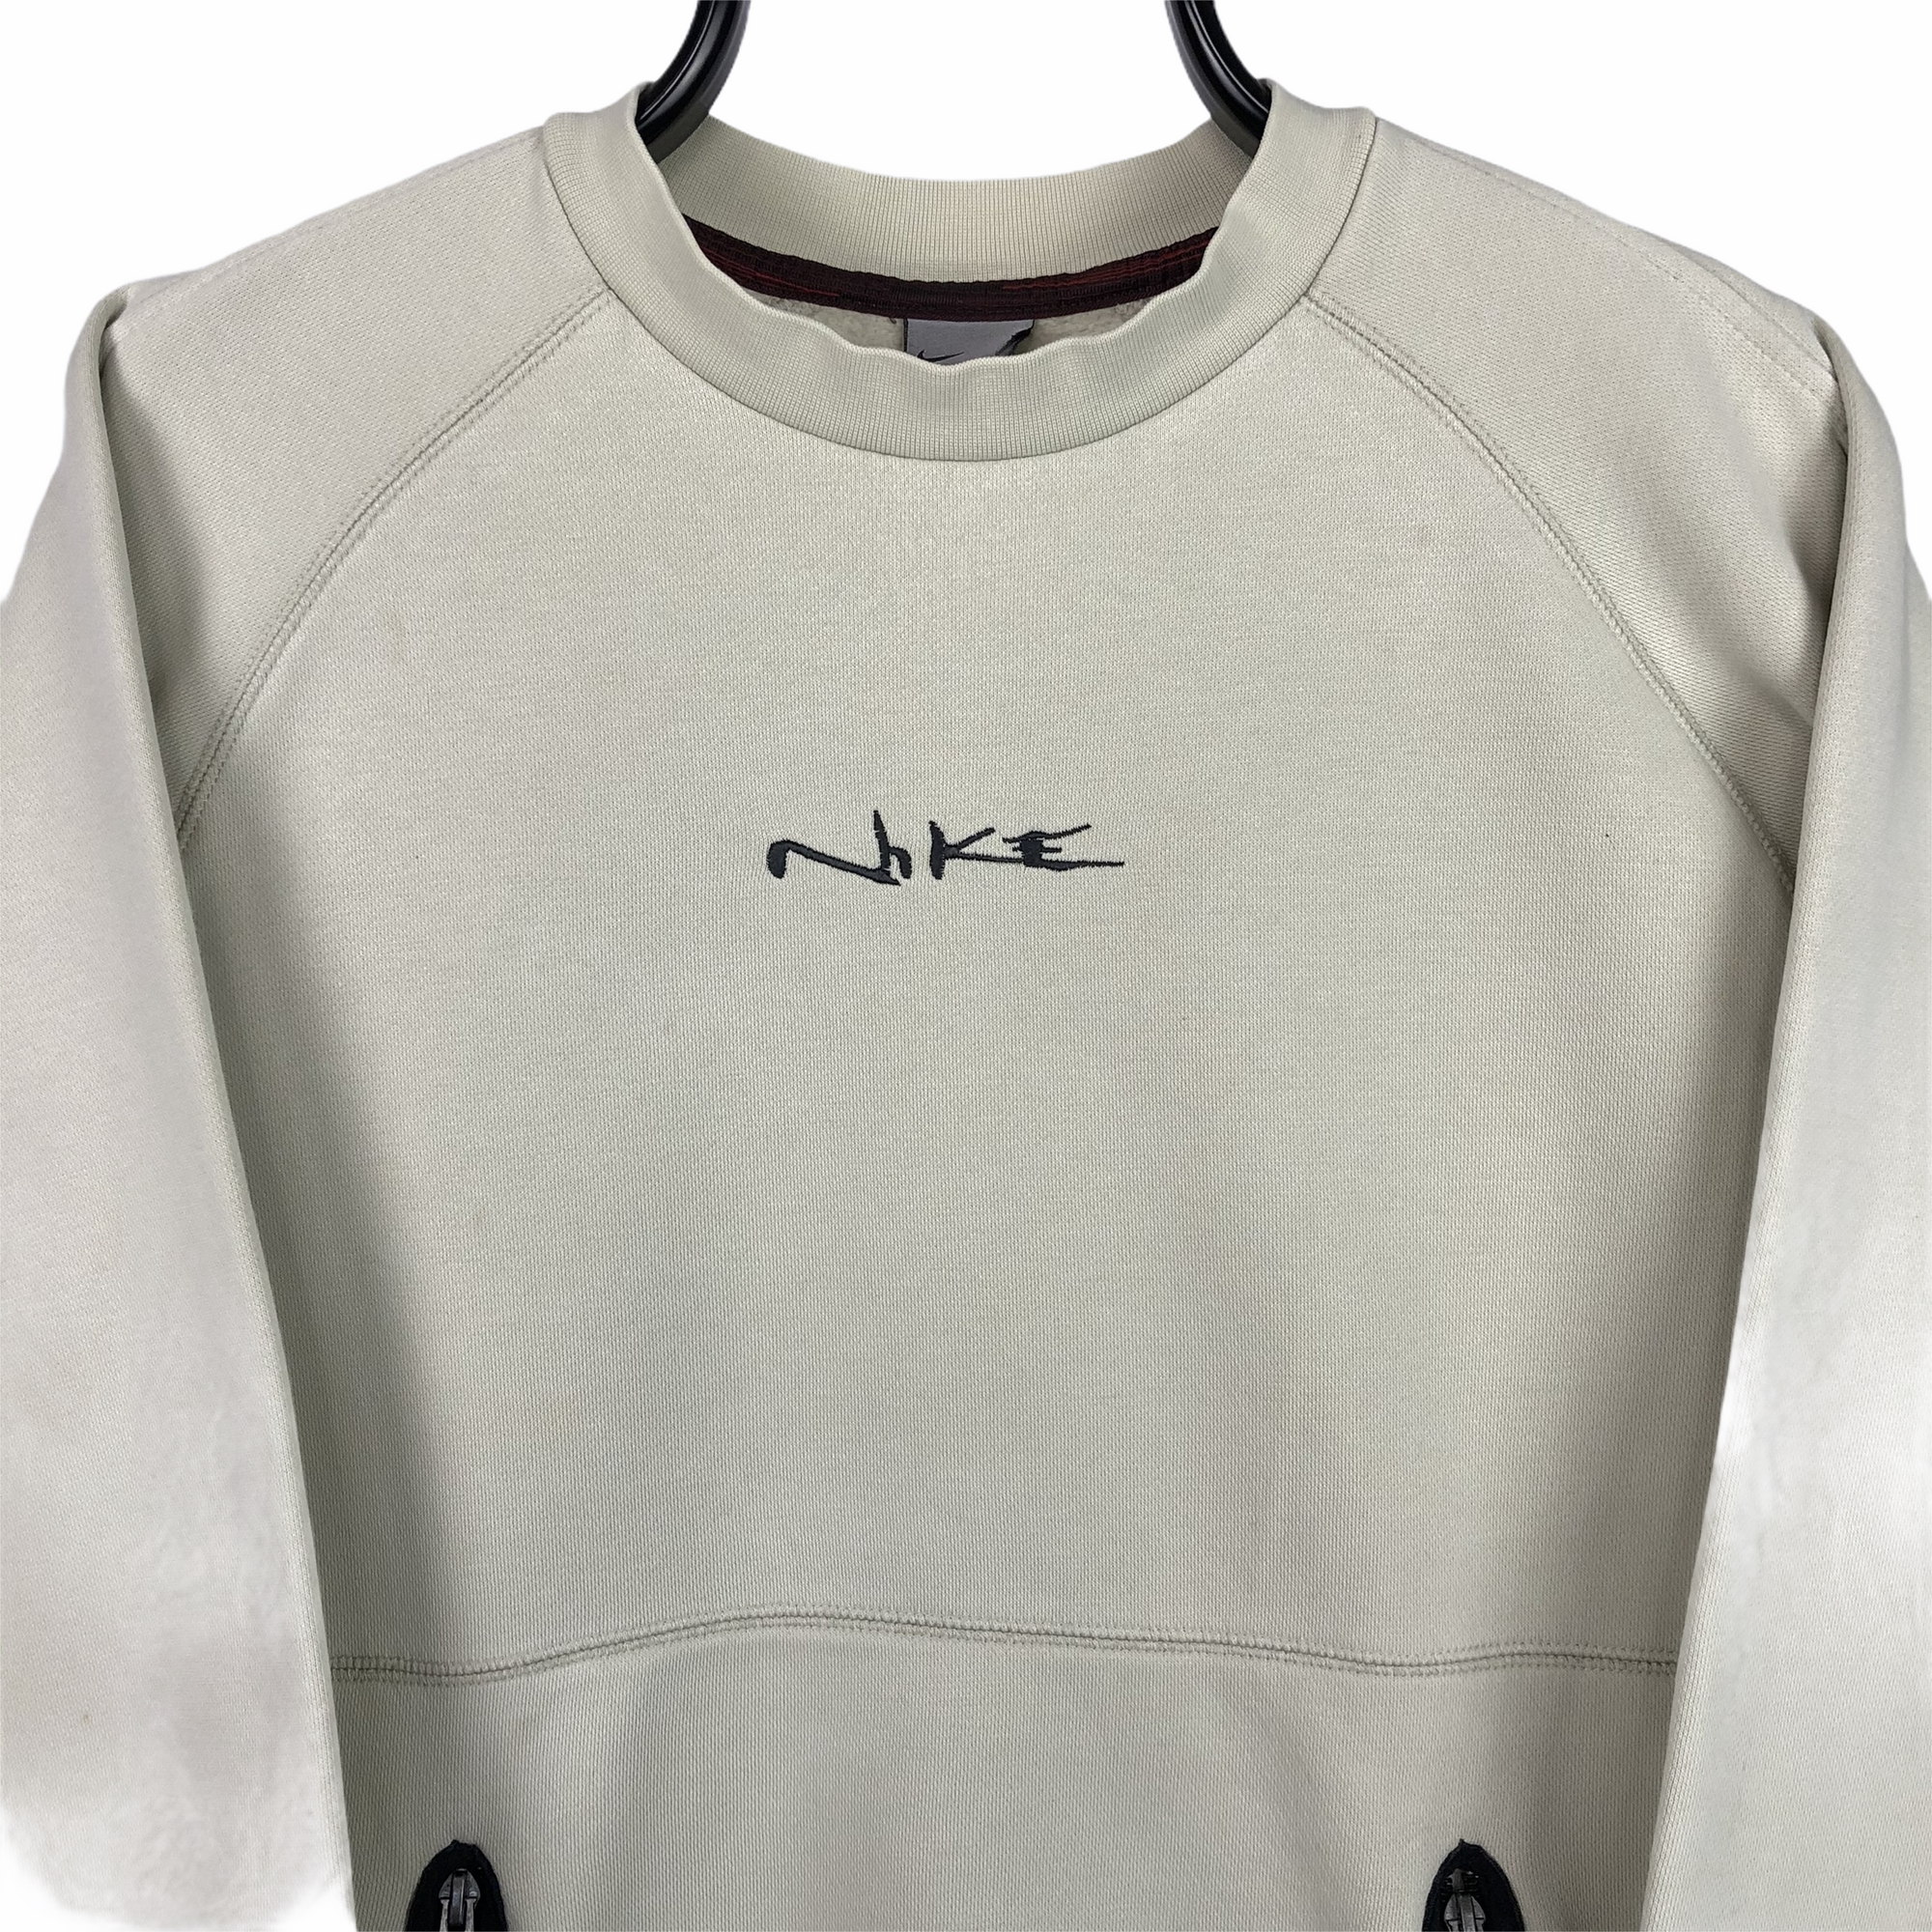 Vintage Nike Graffiti Spellout Sweatshirt in Beige - Men's Small/Women's Medium